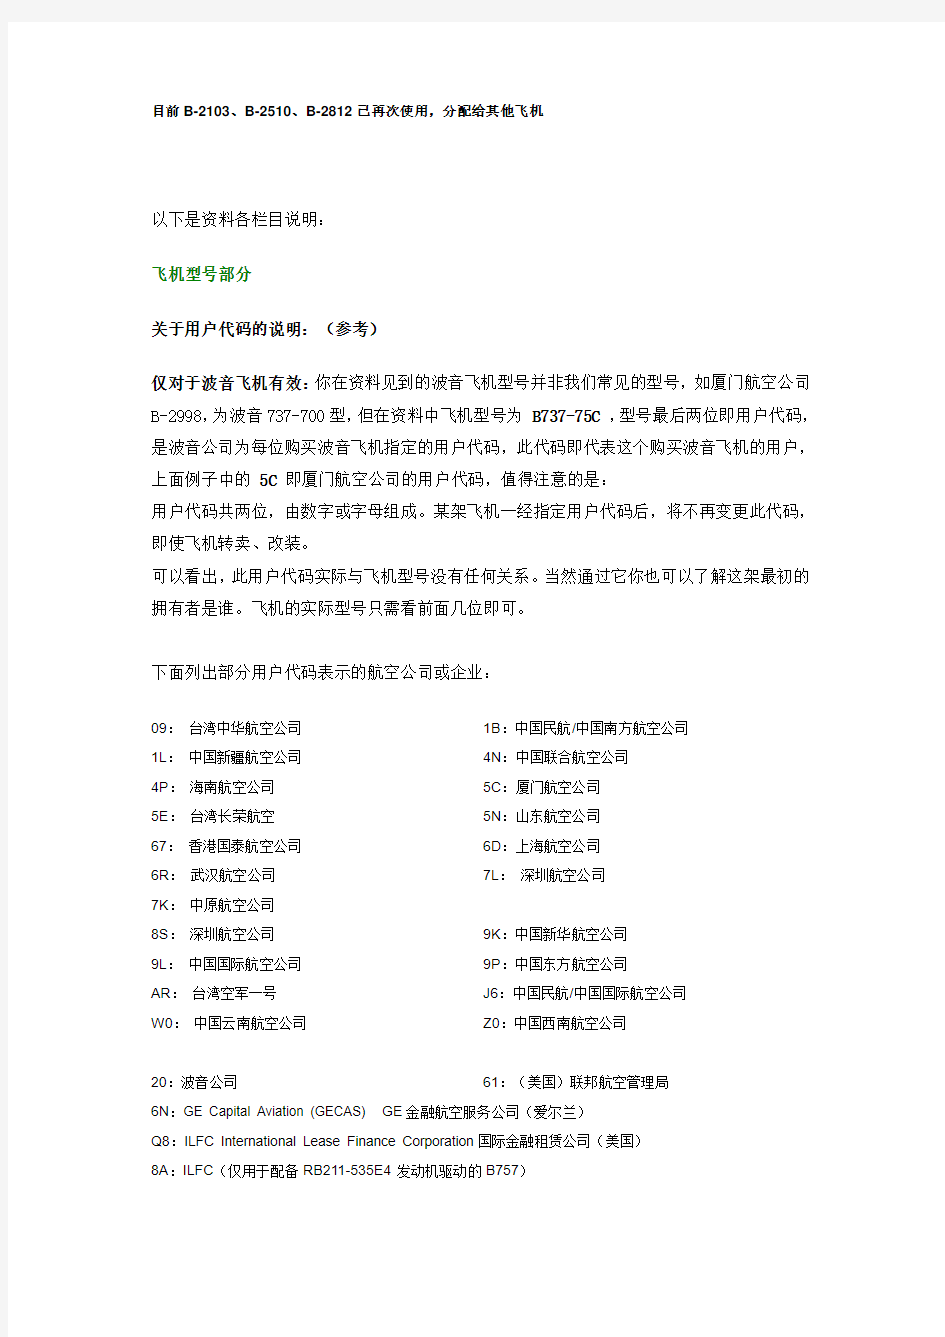 中国国内民航飞机注册号详细资料说明